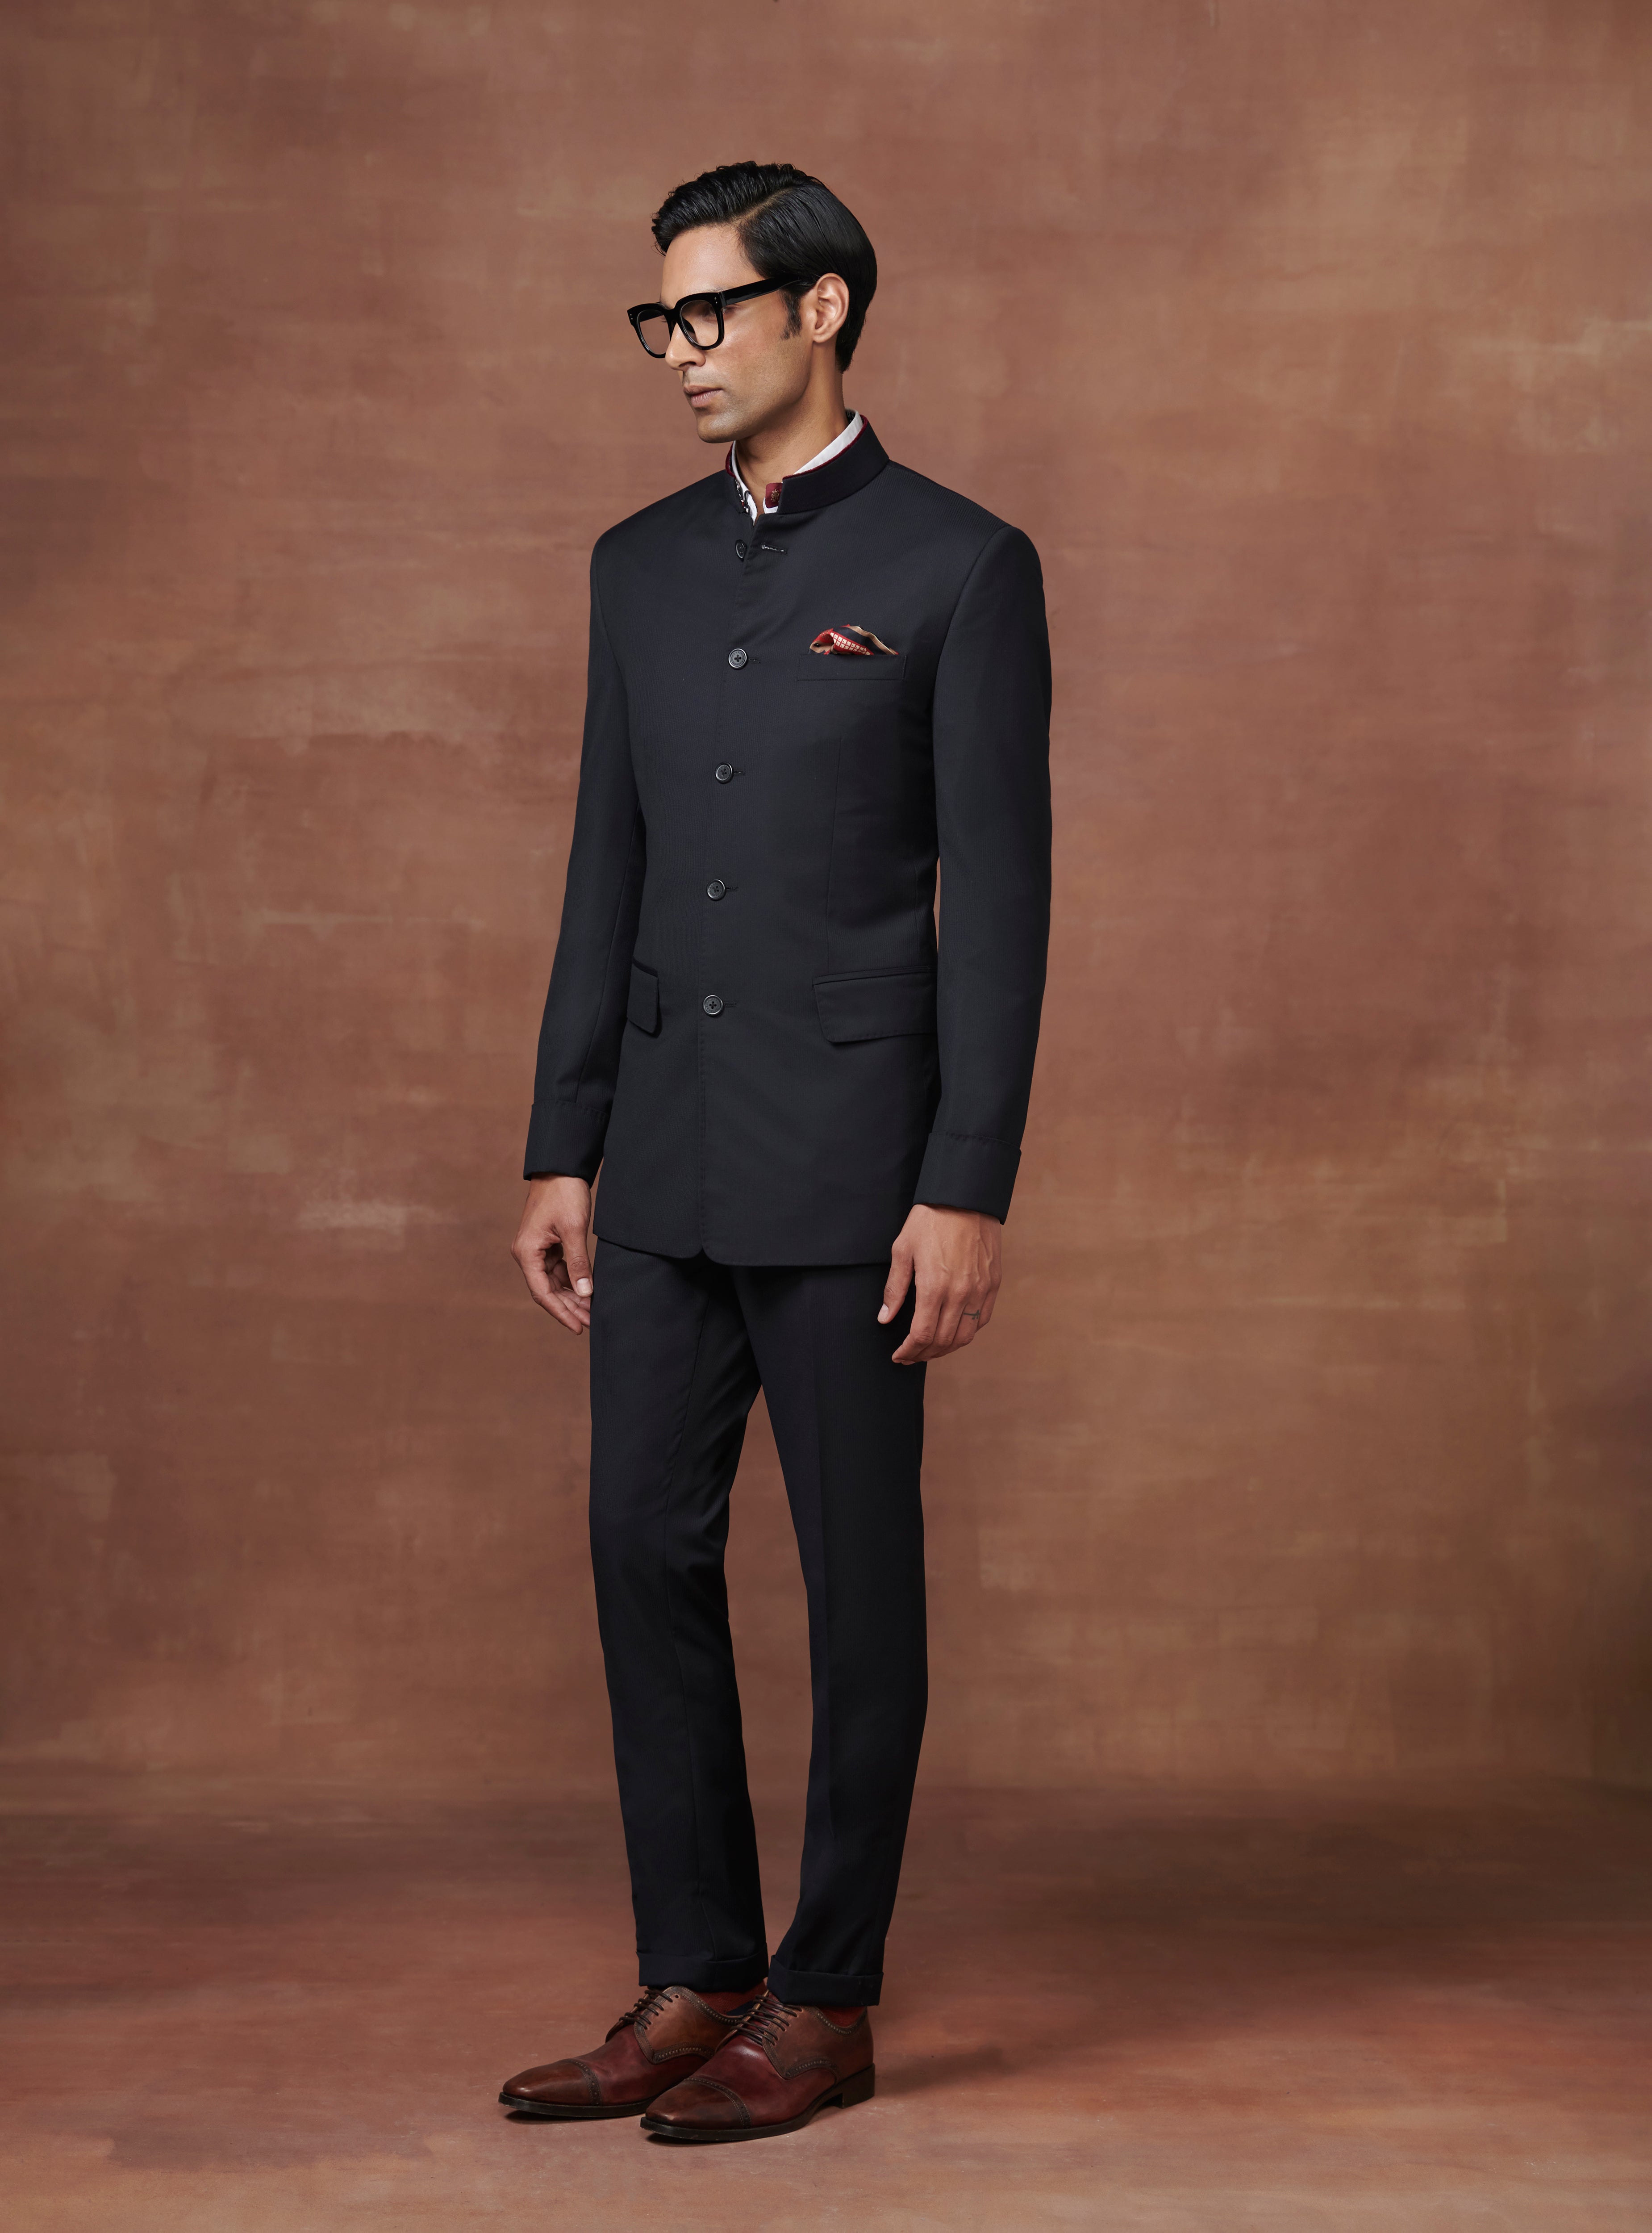 Vastraas Stylish Ethnic Black Traditional Designer Jodhpuri Bandhgala Suit  for Men With Pant. - Etsy